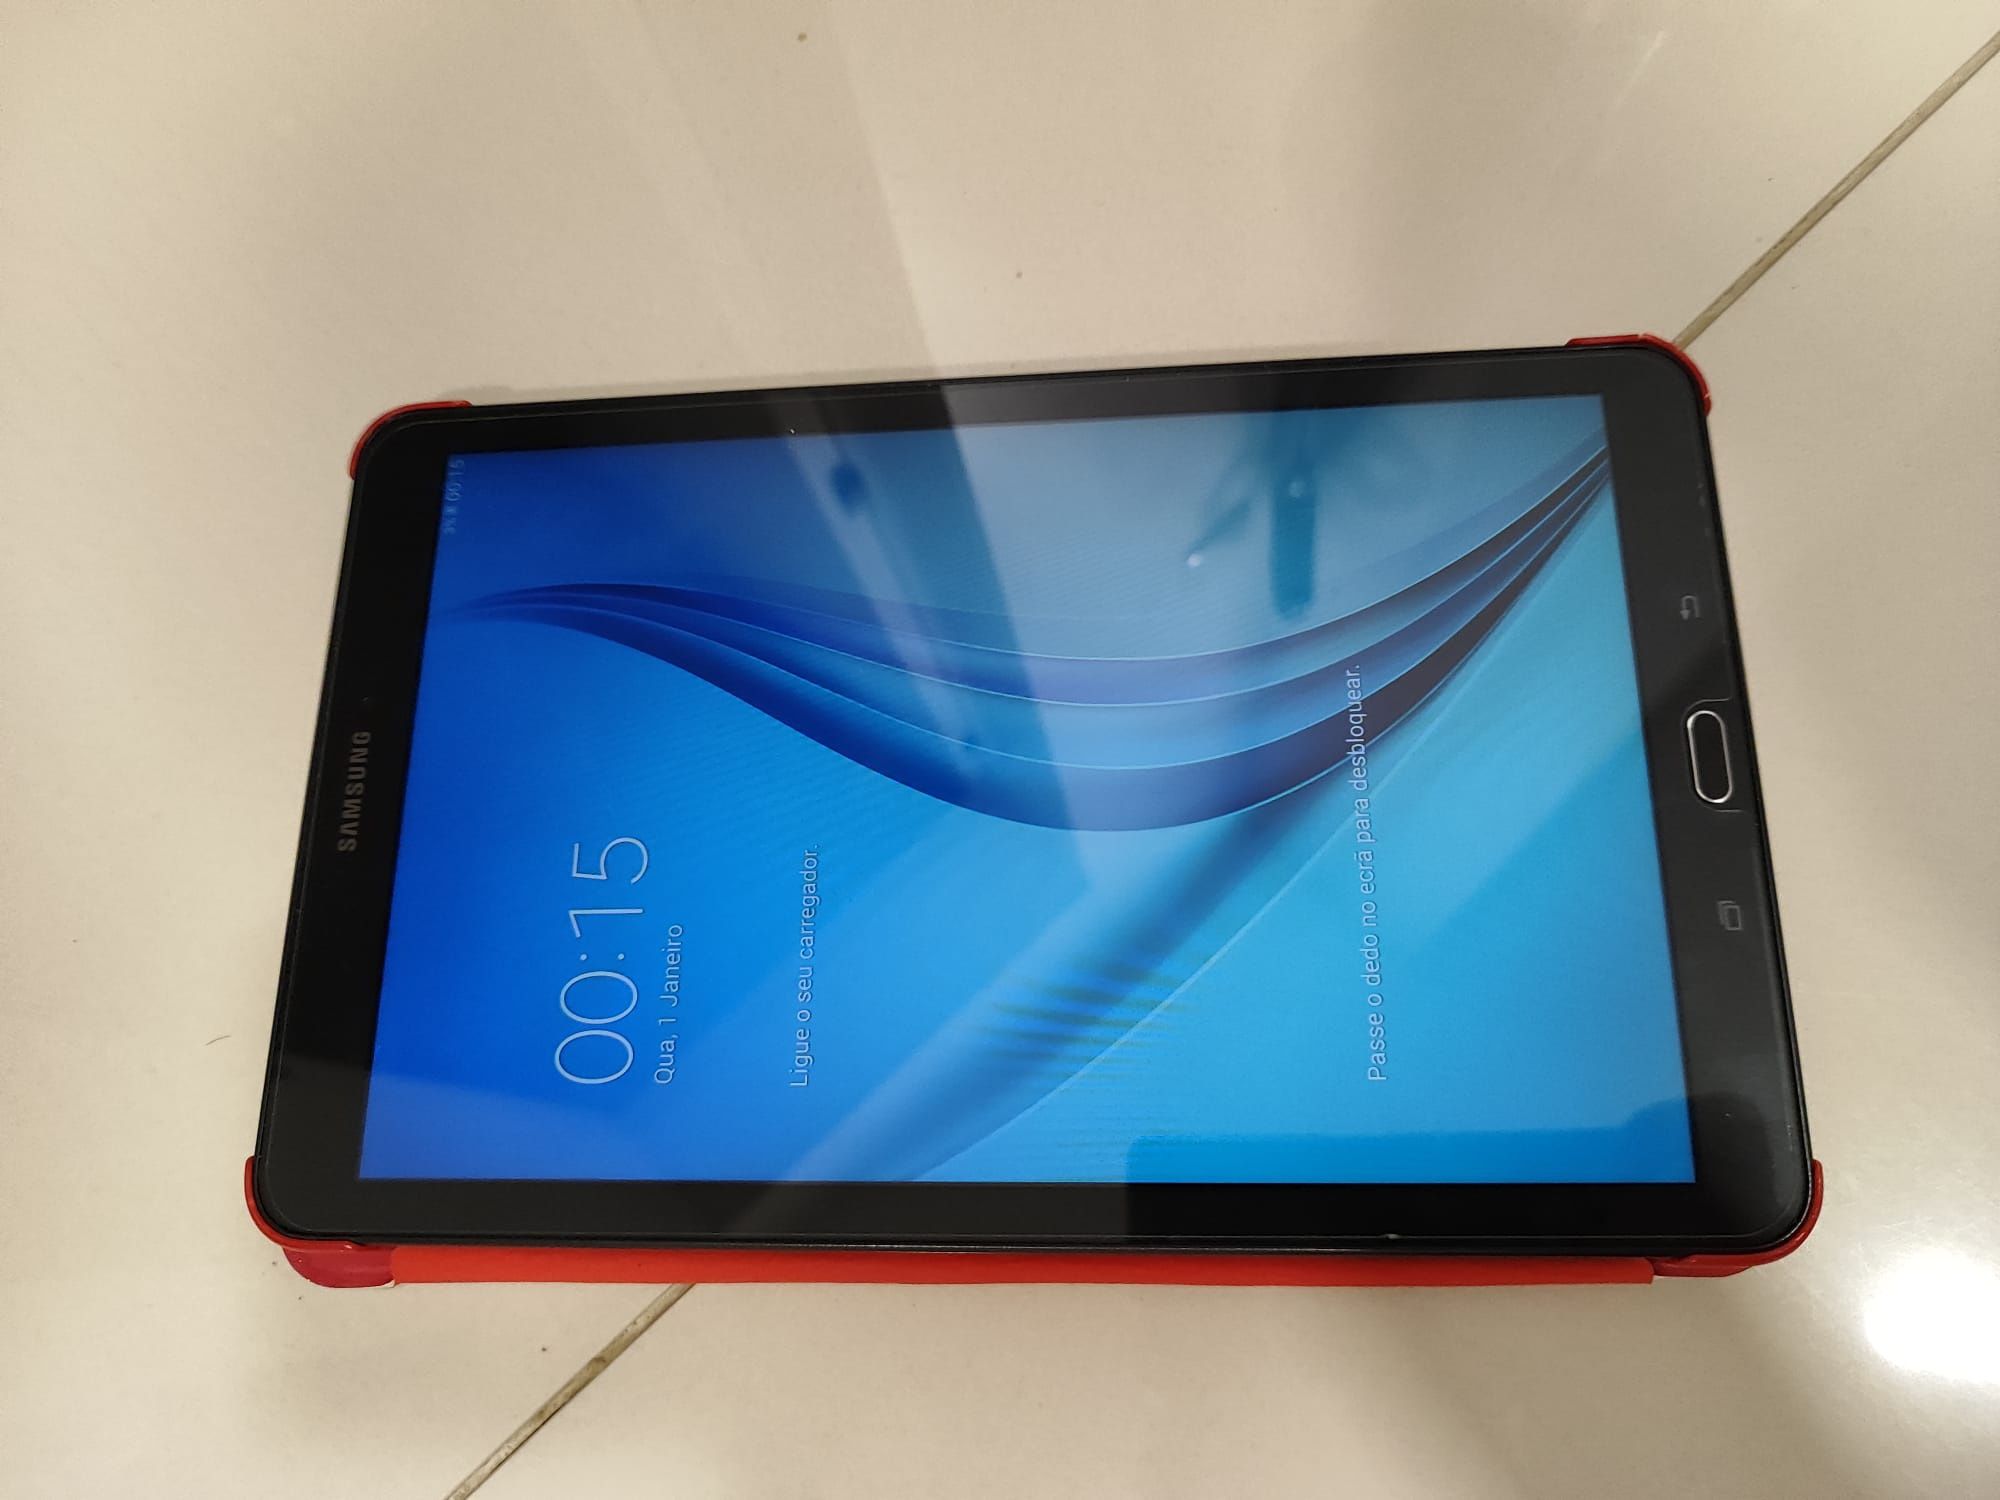 Tablet Samsung Galaxy tab E
Em bom estado 
Preço 85 euros